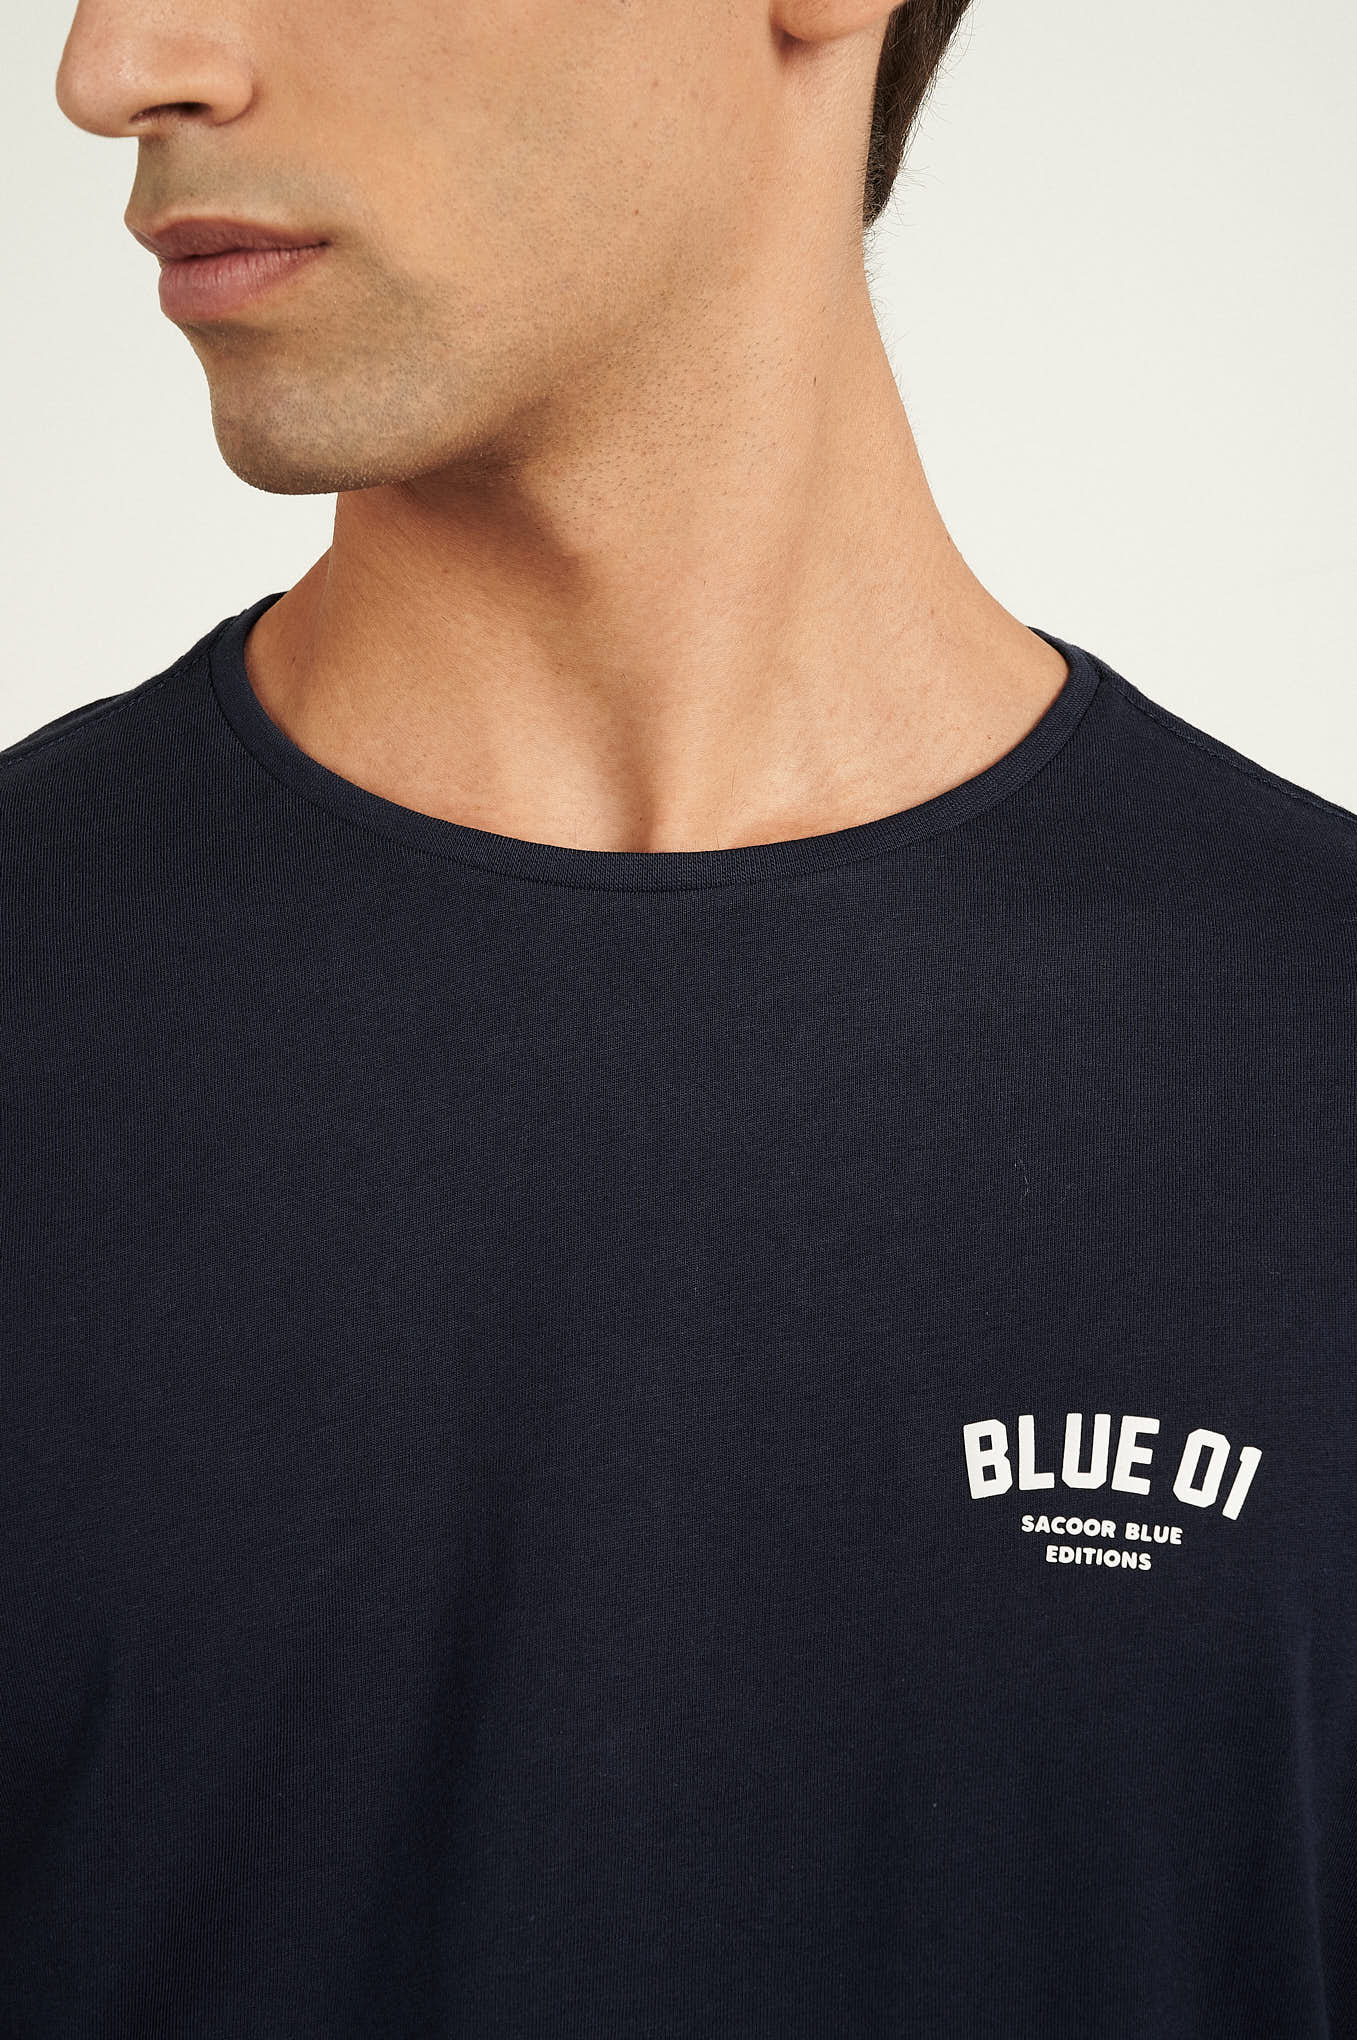 T-Shirt Azul Escuro Casual Homem